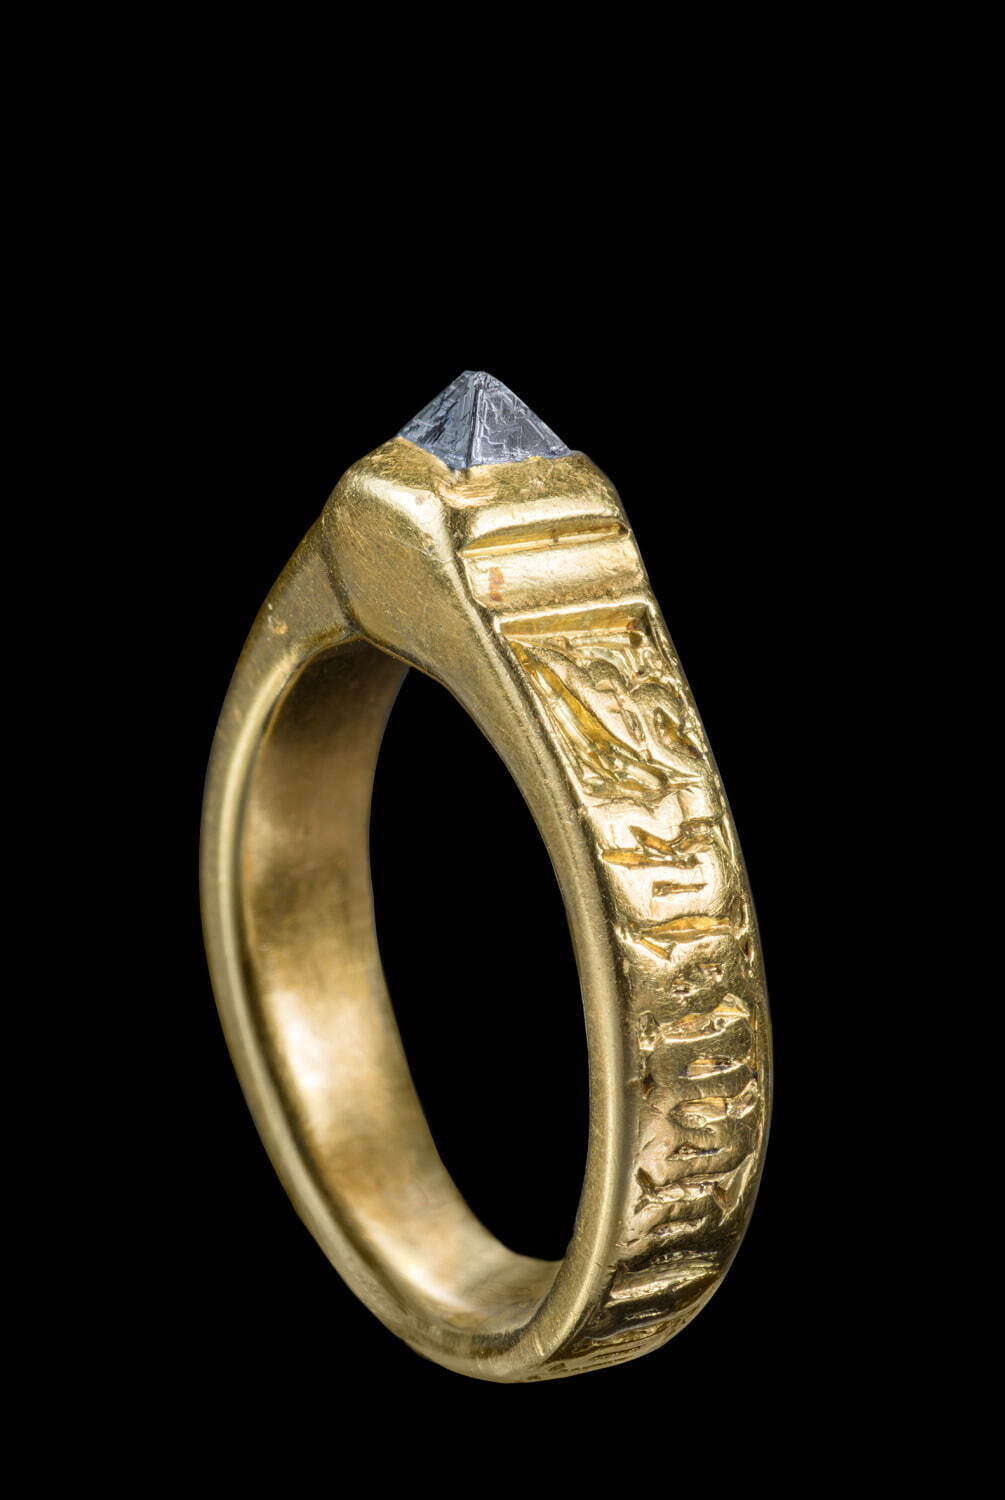 ピラミッド形ダイヤモンドの指輪 15世紀 ダイヤモンド、金
国立西洋美術館所蔵 橋本コレクション